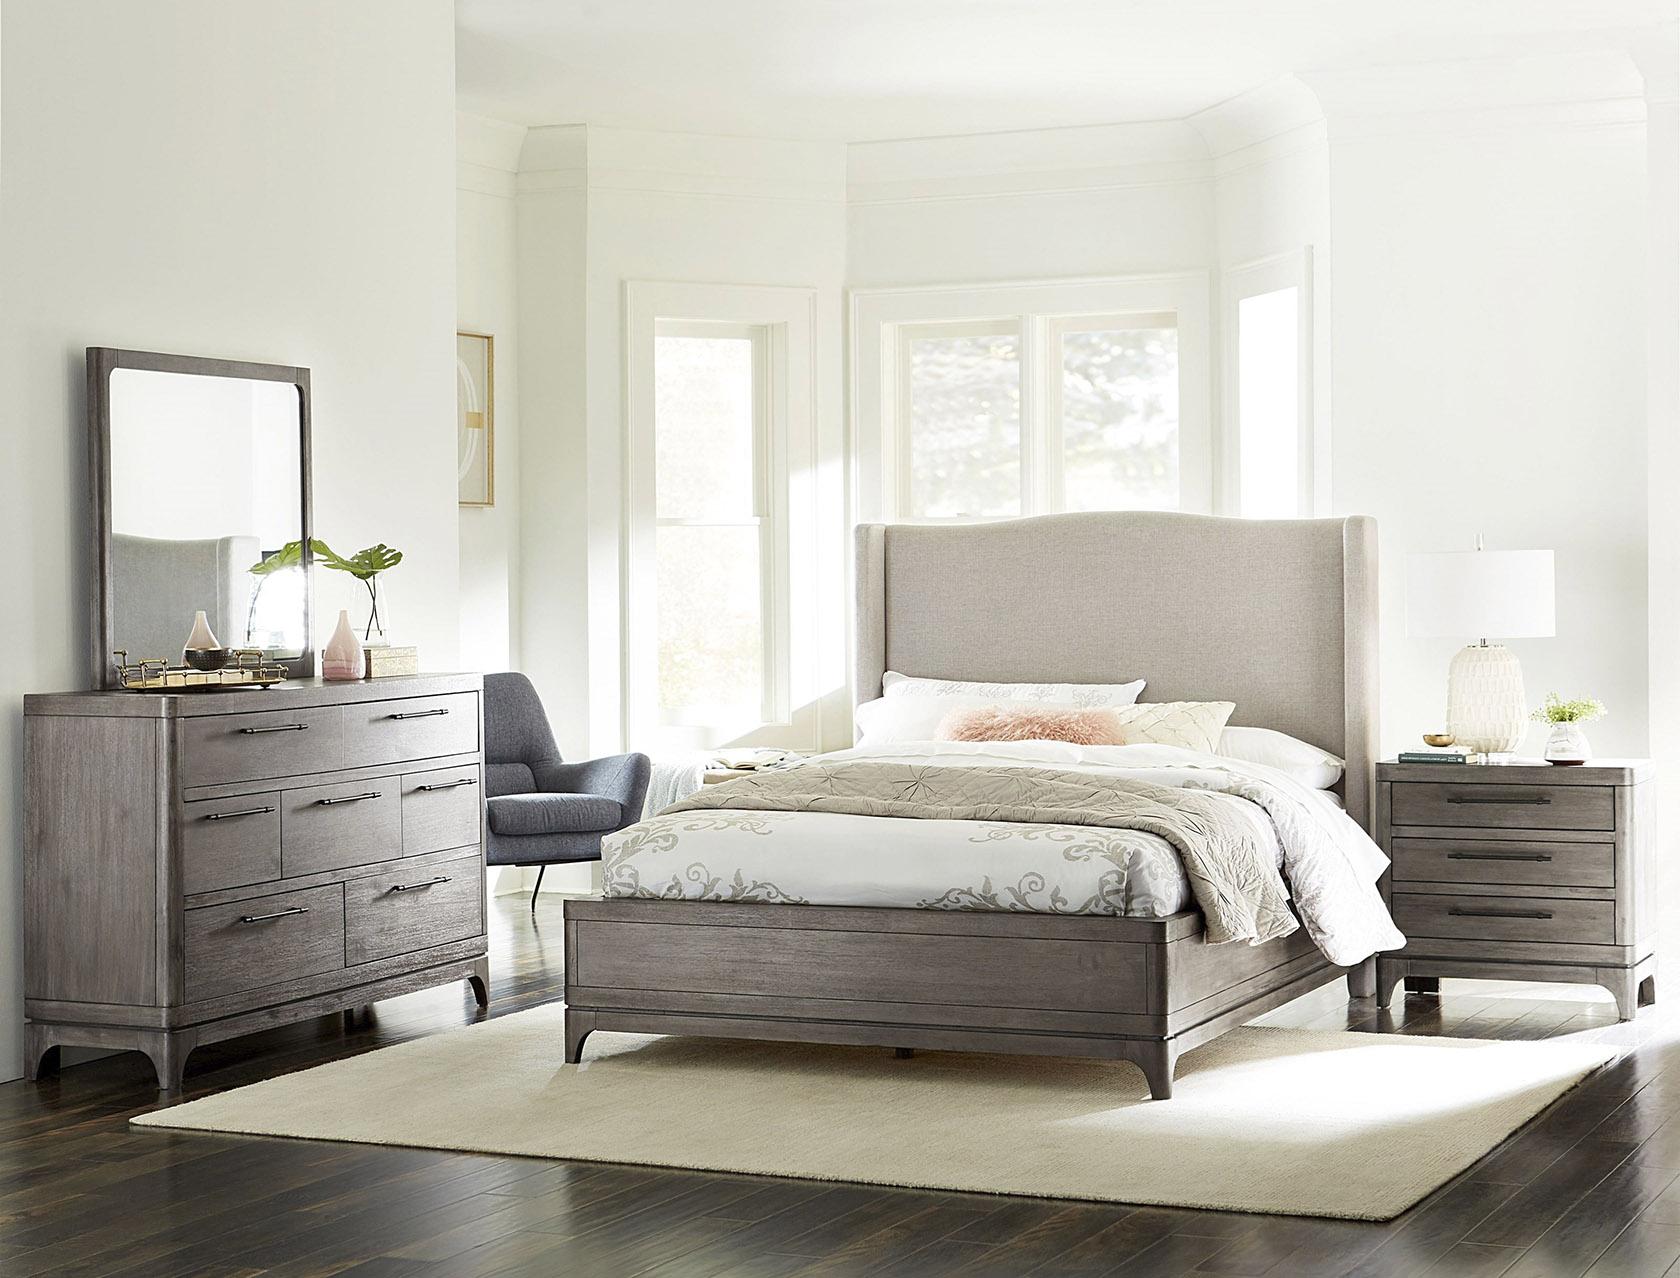 

    
2KS3A6 Modus Furniture Platform Bed
